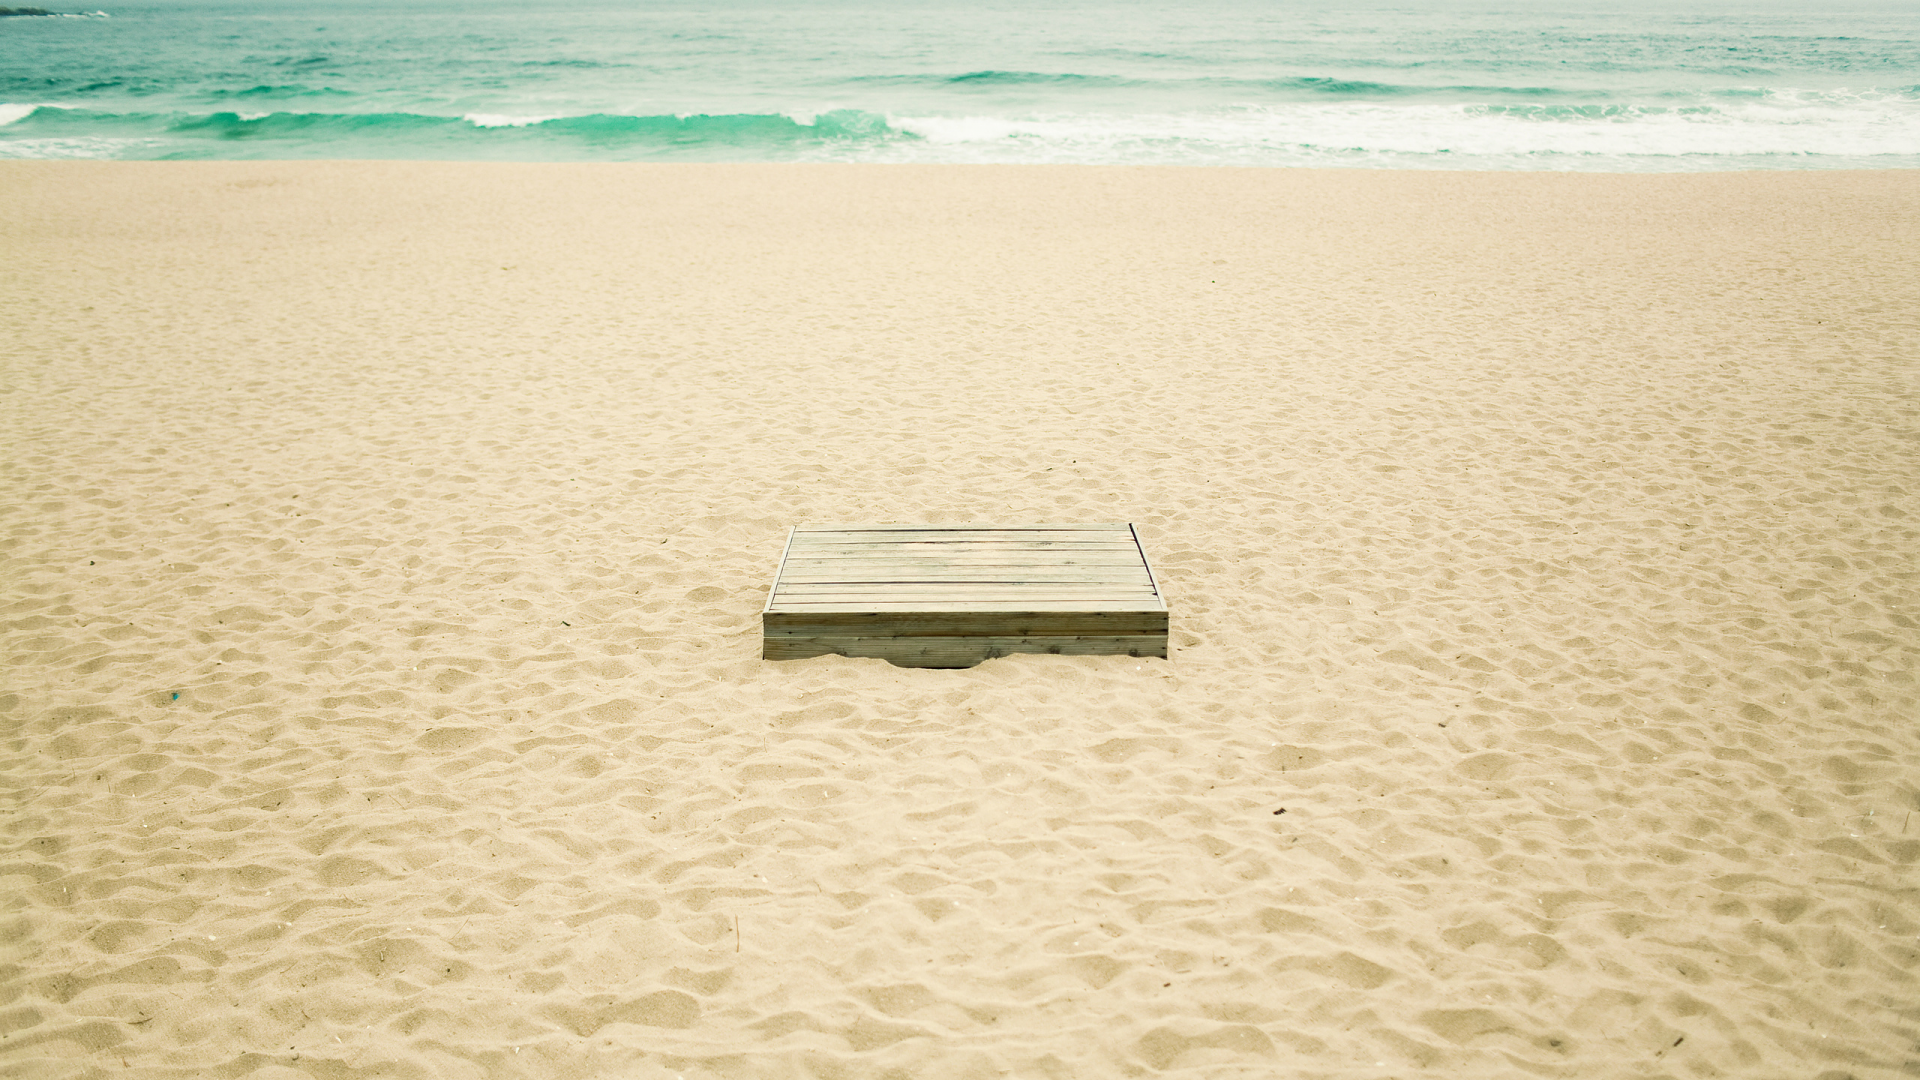 фото, море, песок, вода, океан, коробка, пляж, лето